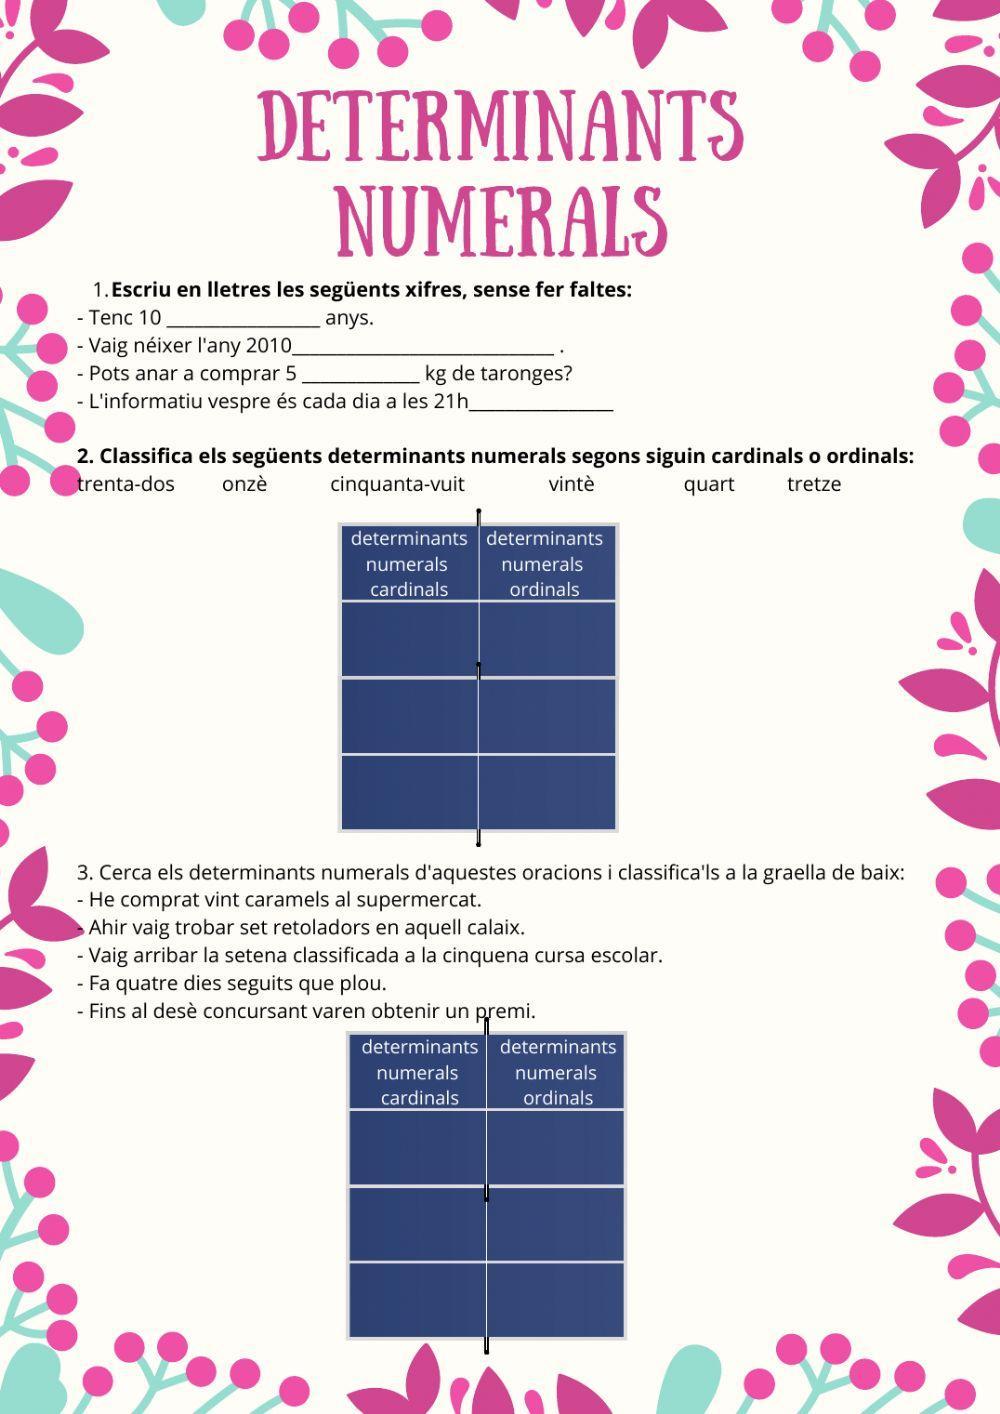 Determinants numerals